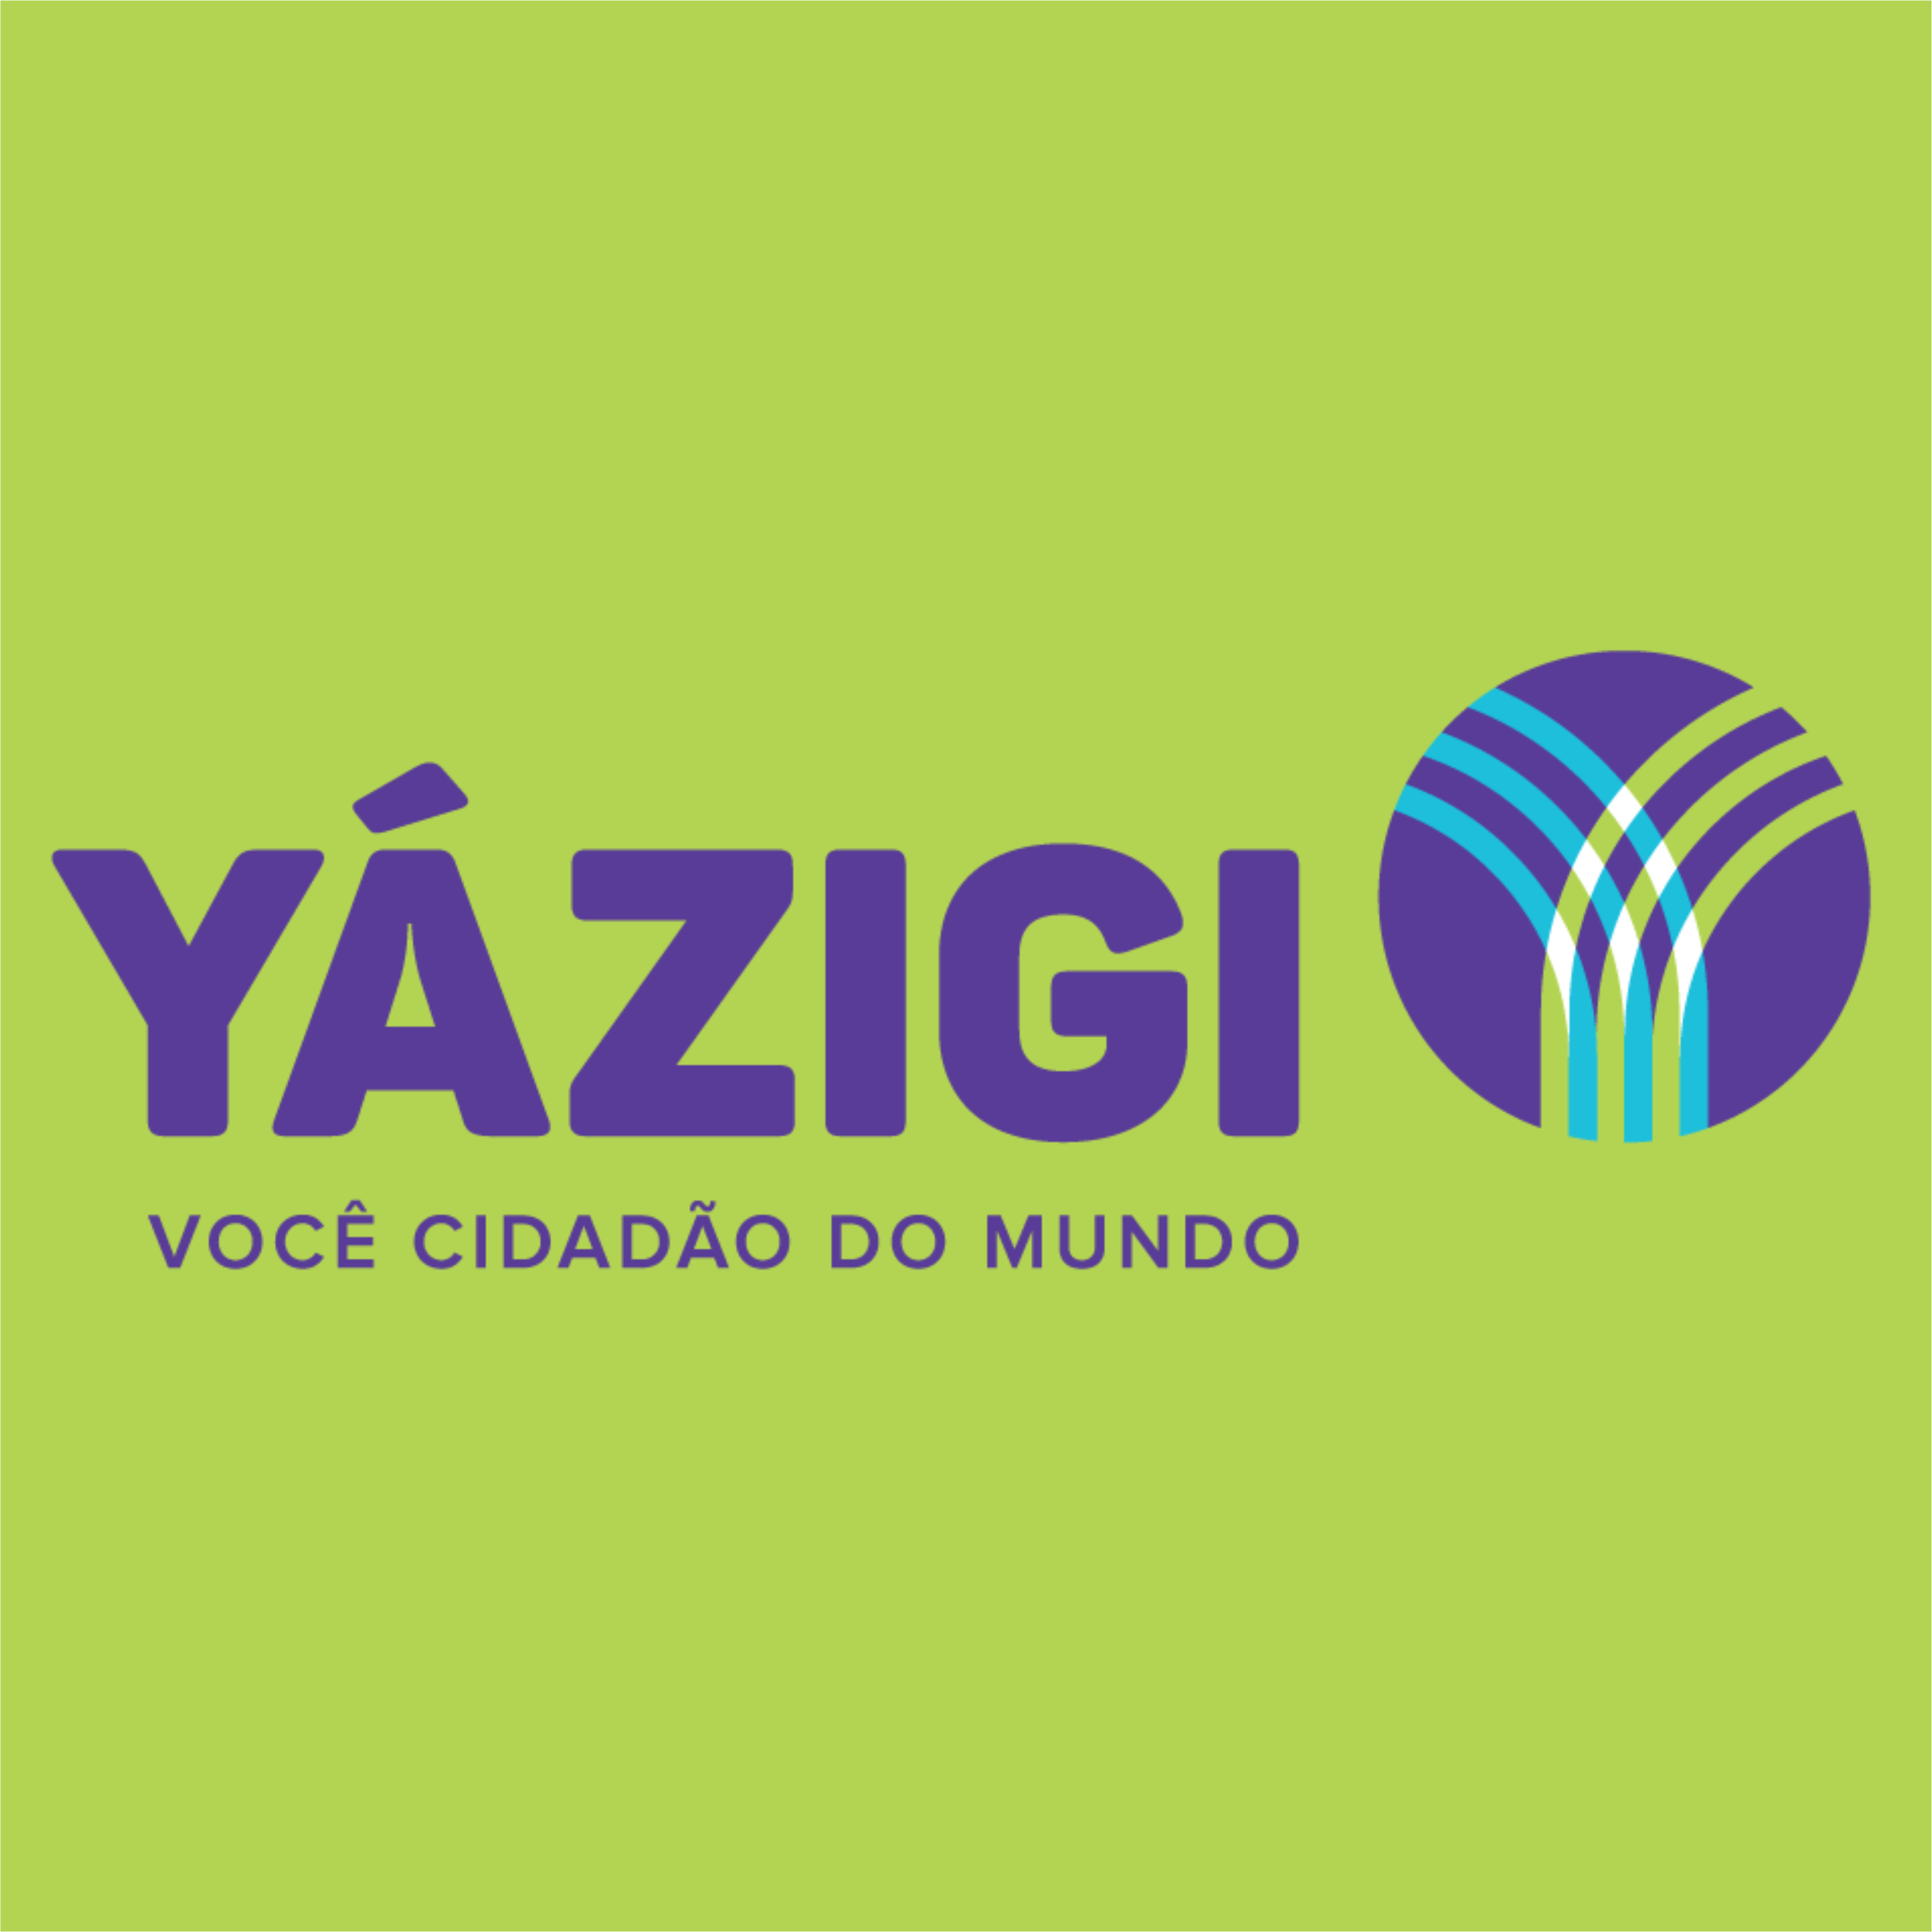 yazigi